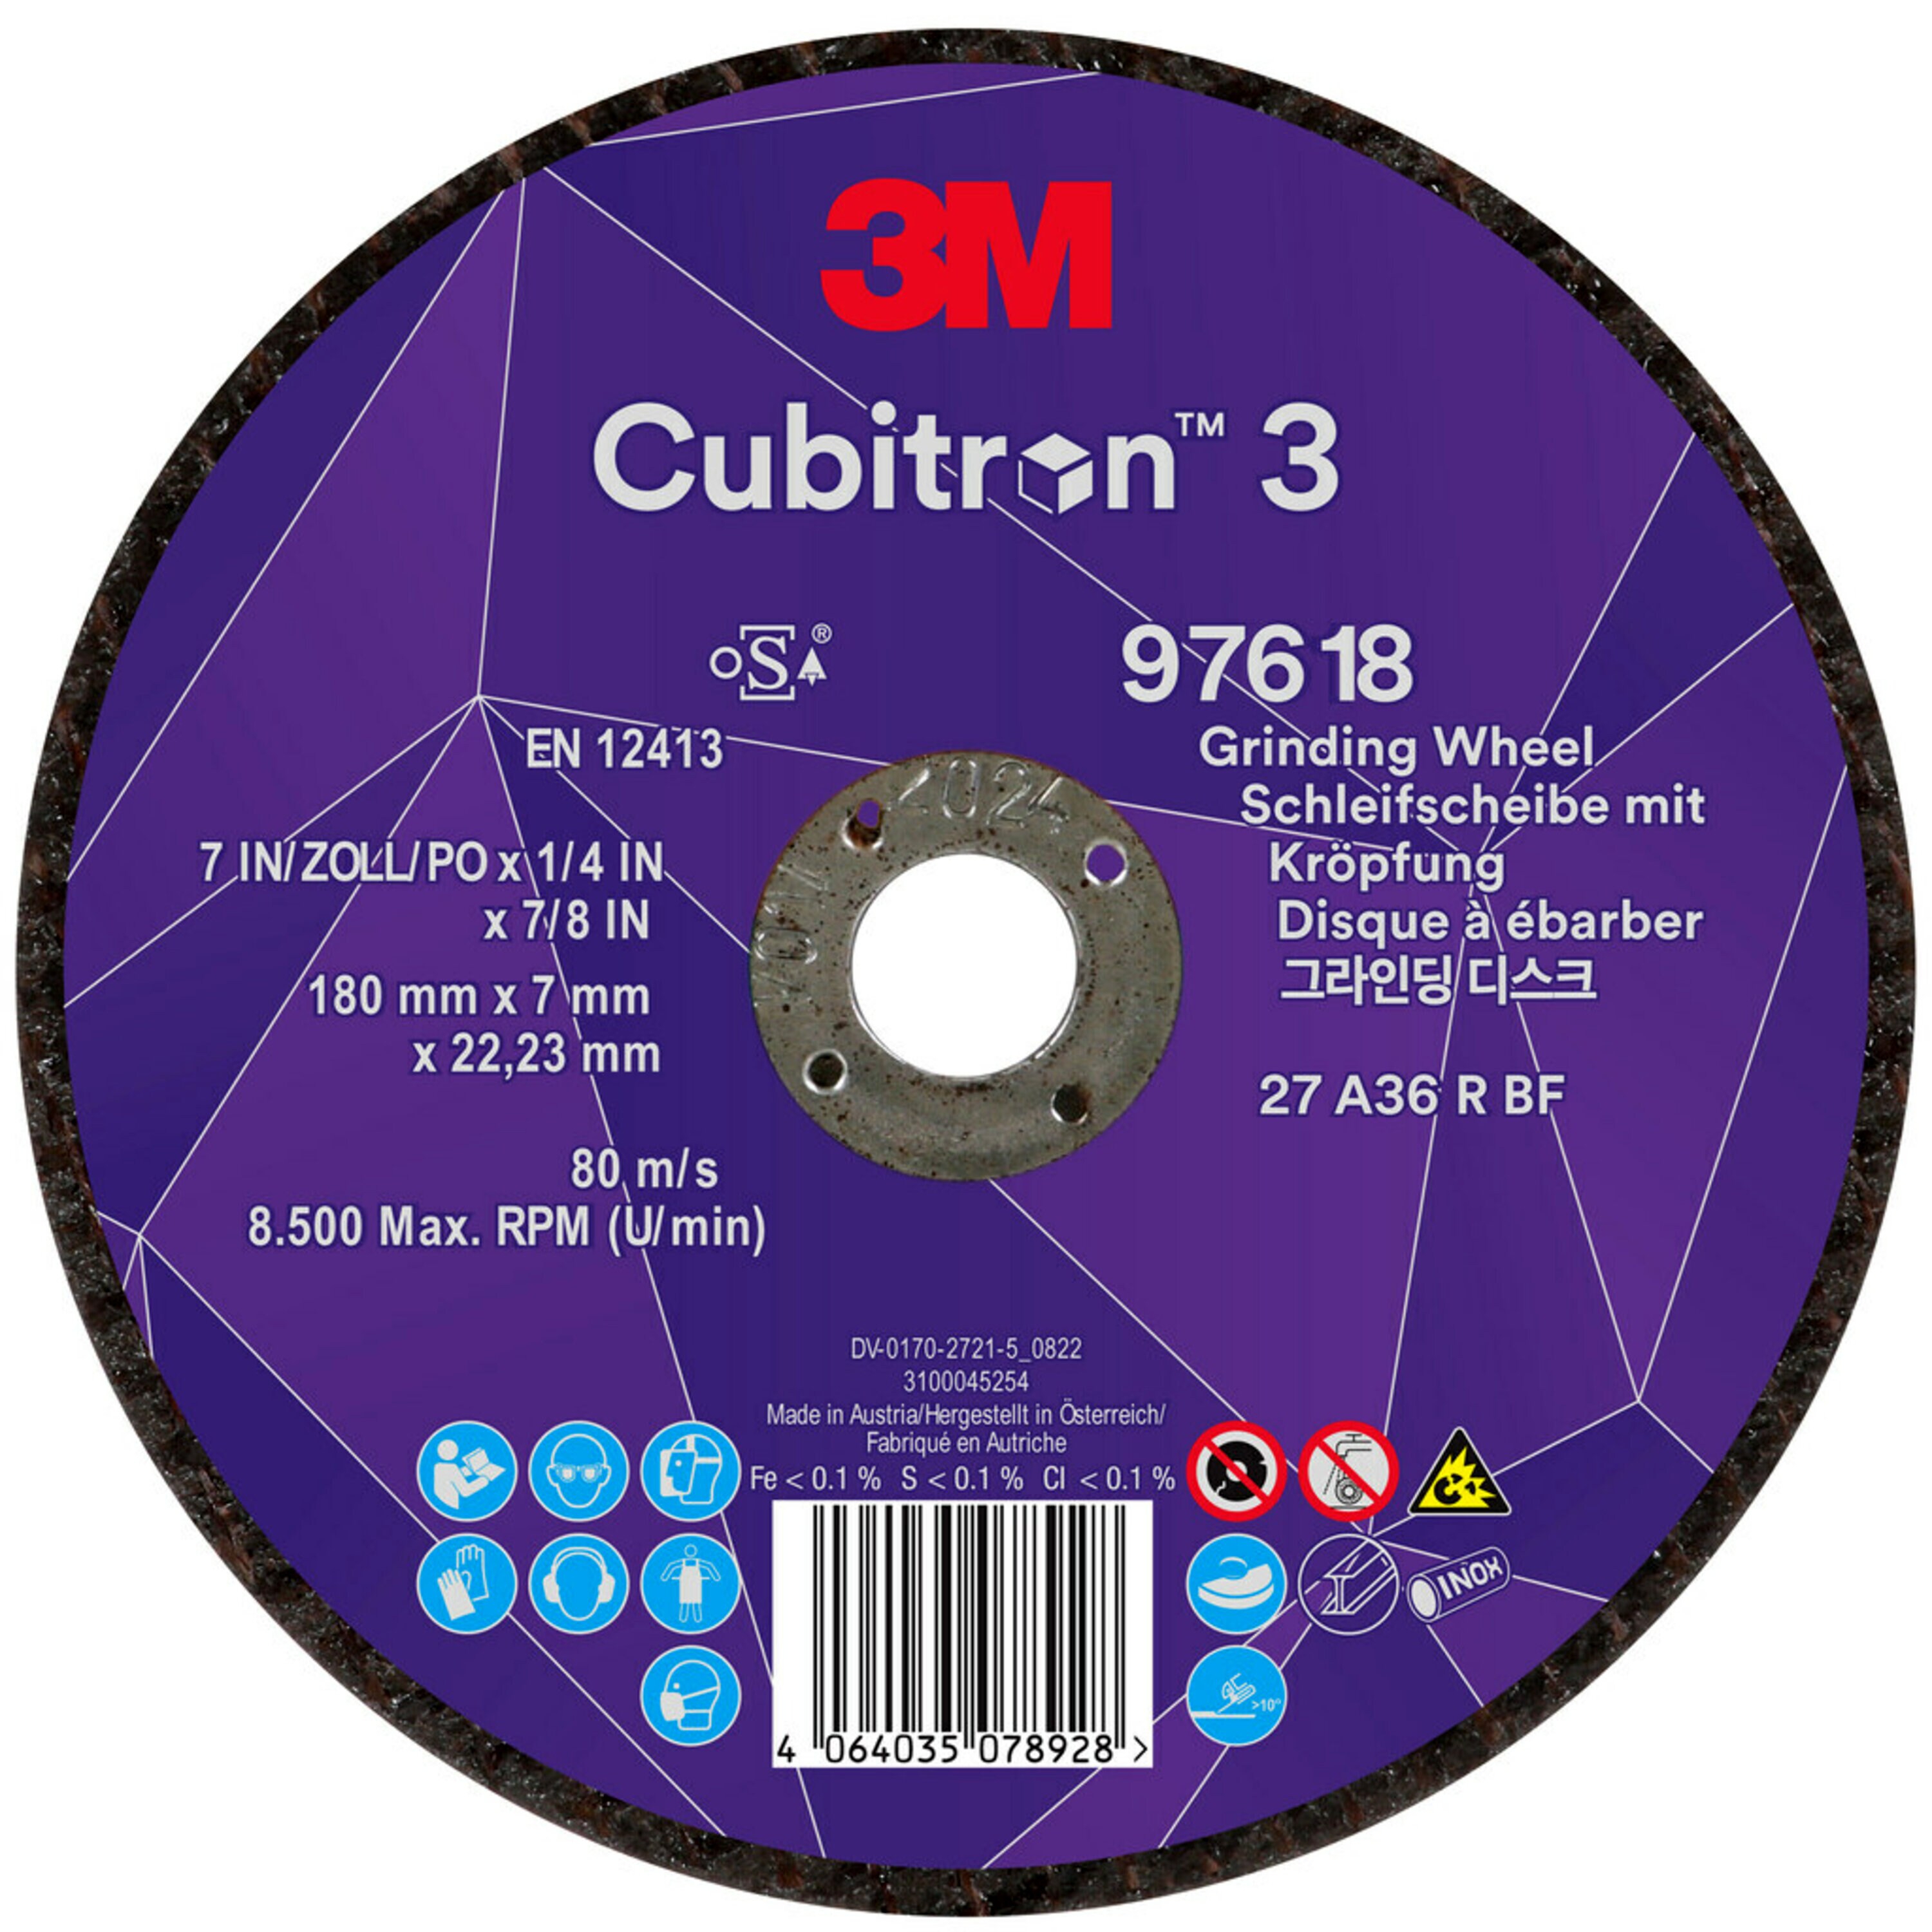 3M Cubitron 3 disque à ébarber, 180 mm, 7,0 mm, 22,23 mm, 36 , type 27, spécialement pour le jointage # 97618